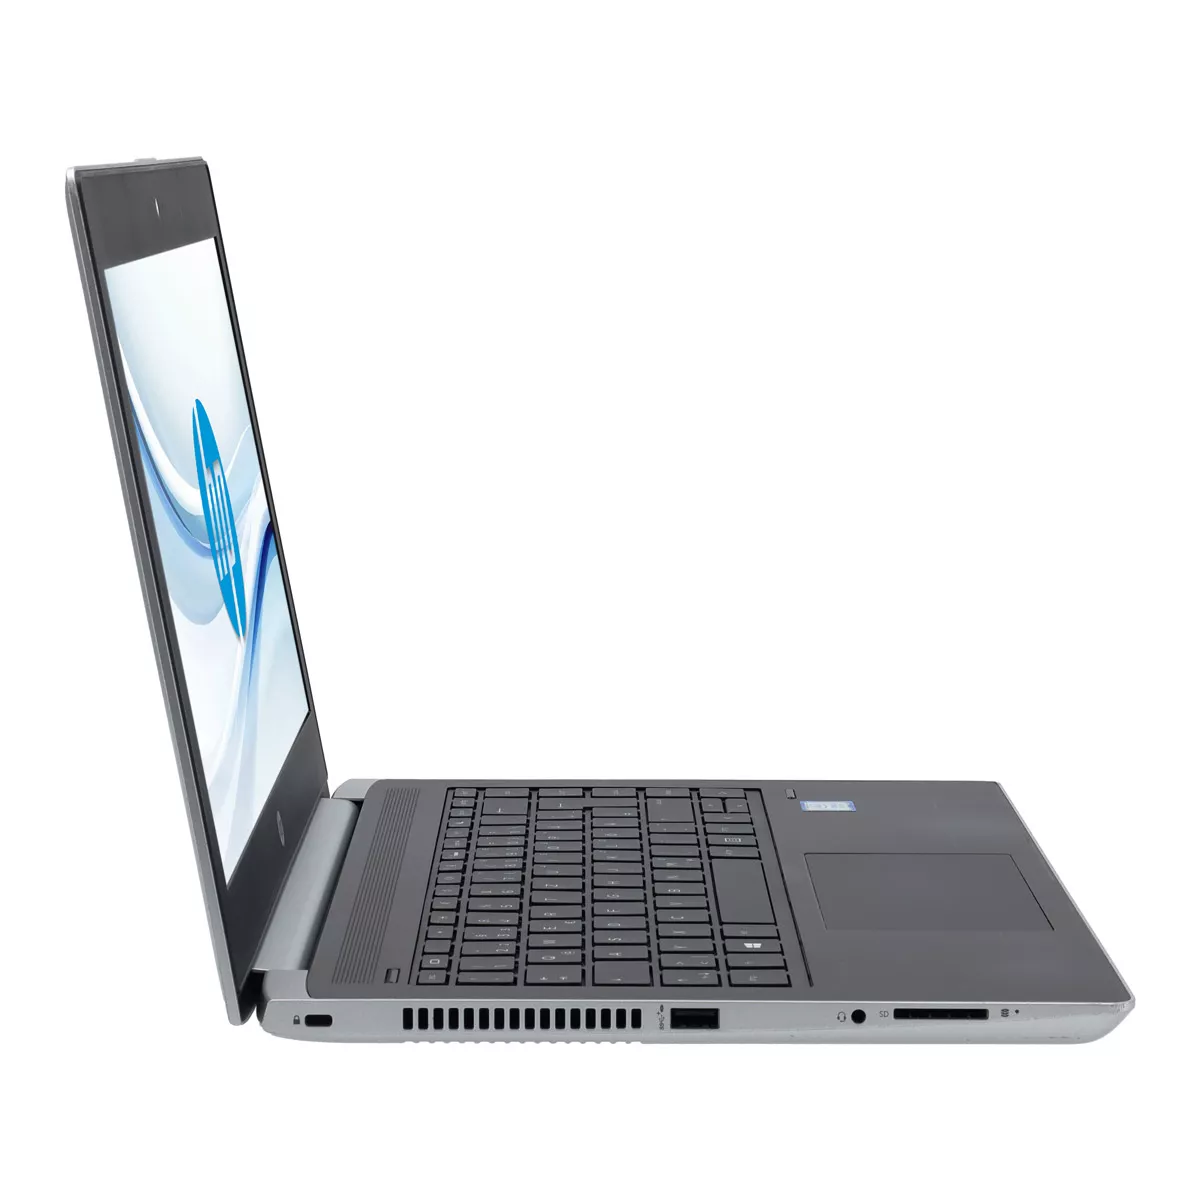 HP ProBook 430 G5 Core i5 8250U 8 GB 240 GB M.2 nVME SSD Webcam B